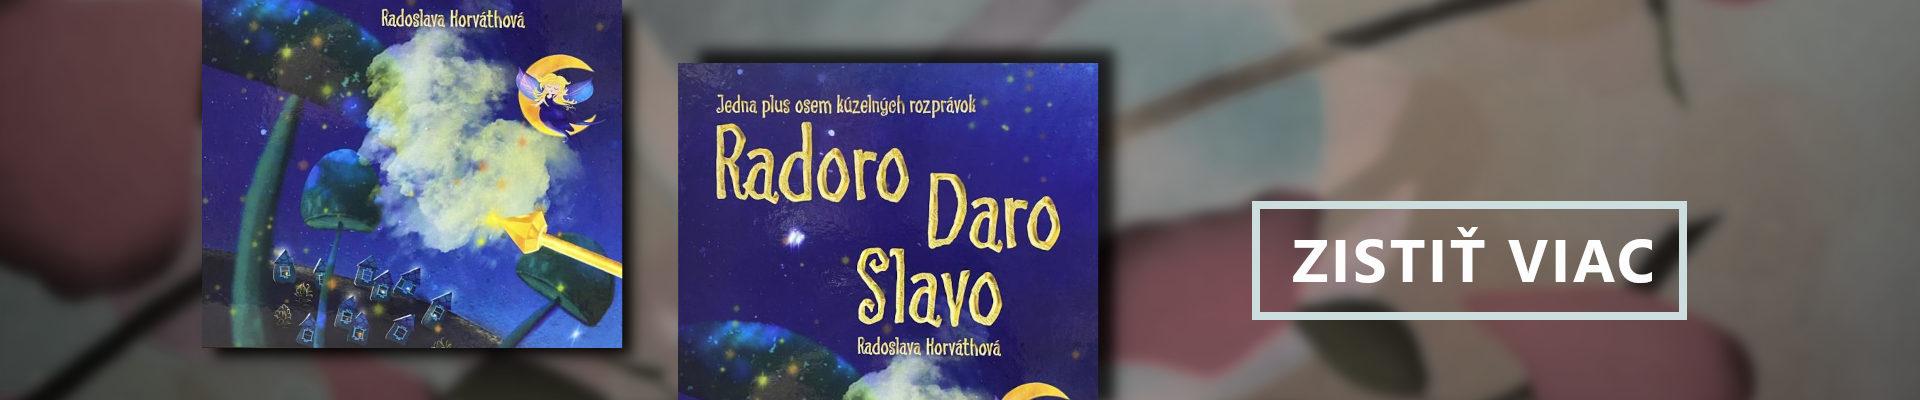 kniha: RadoroDaroSlavo - Jedna plus osem kúzelných rozprávok - Radoslava Horváthová